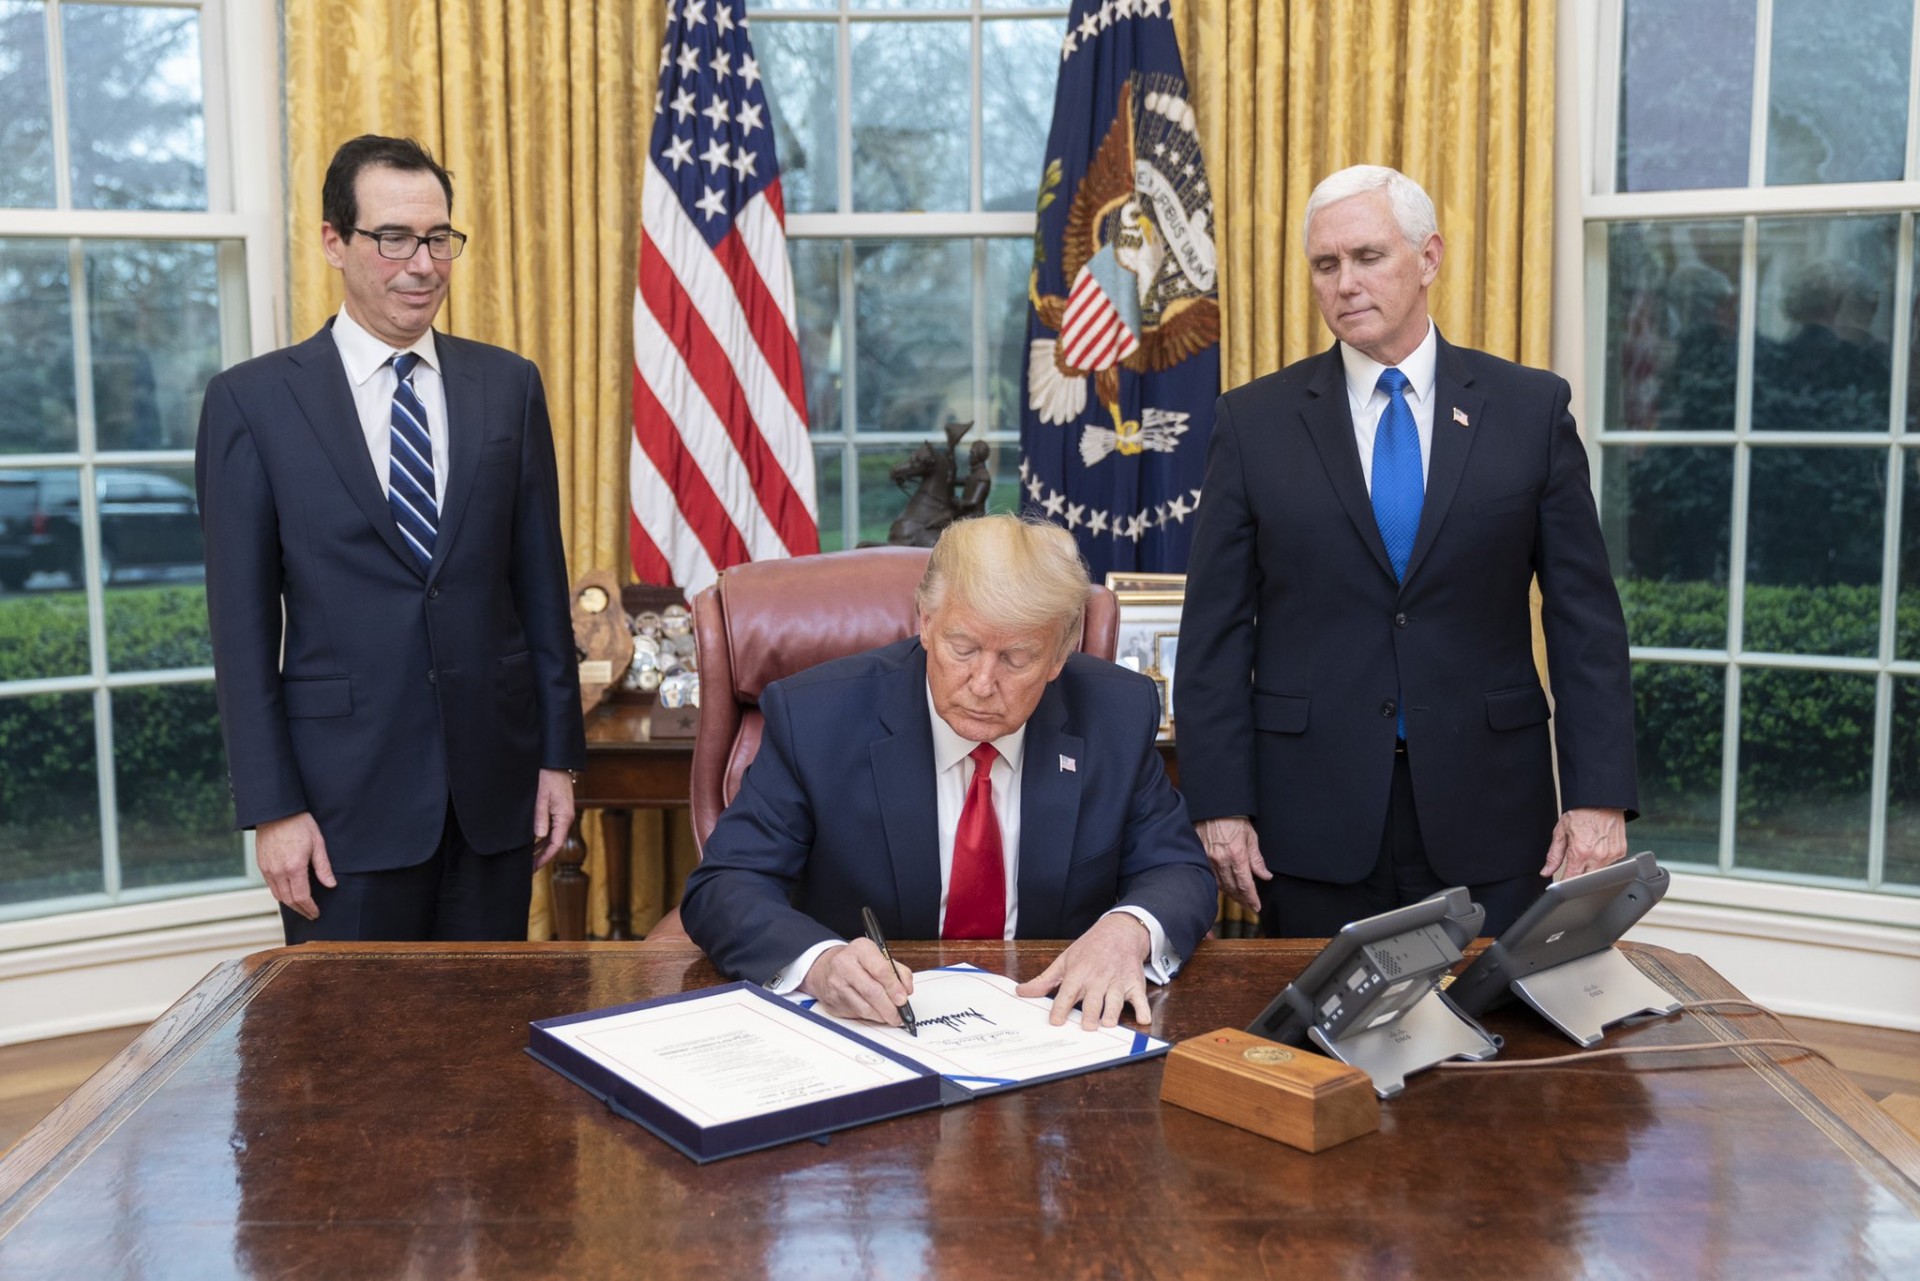 Donald Trump Prezydent USA oraz Steve Mnuchin  (Sekretarz Skarbu - z lewej) i Mike Pence, Wiceprezydent USA podczas podpisywania aktów prawnych mających ułatwić walkę z koronawirusem w USA. Fot. Twitter/Biały Dom